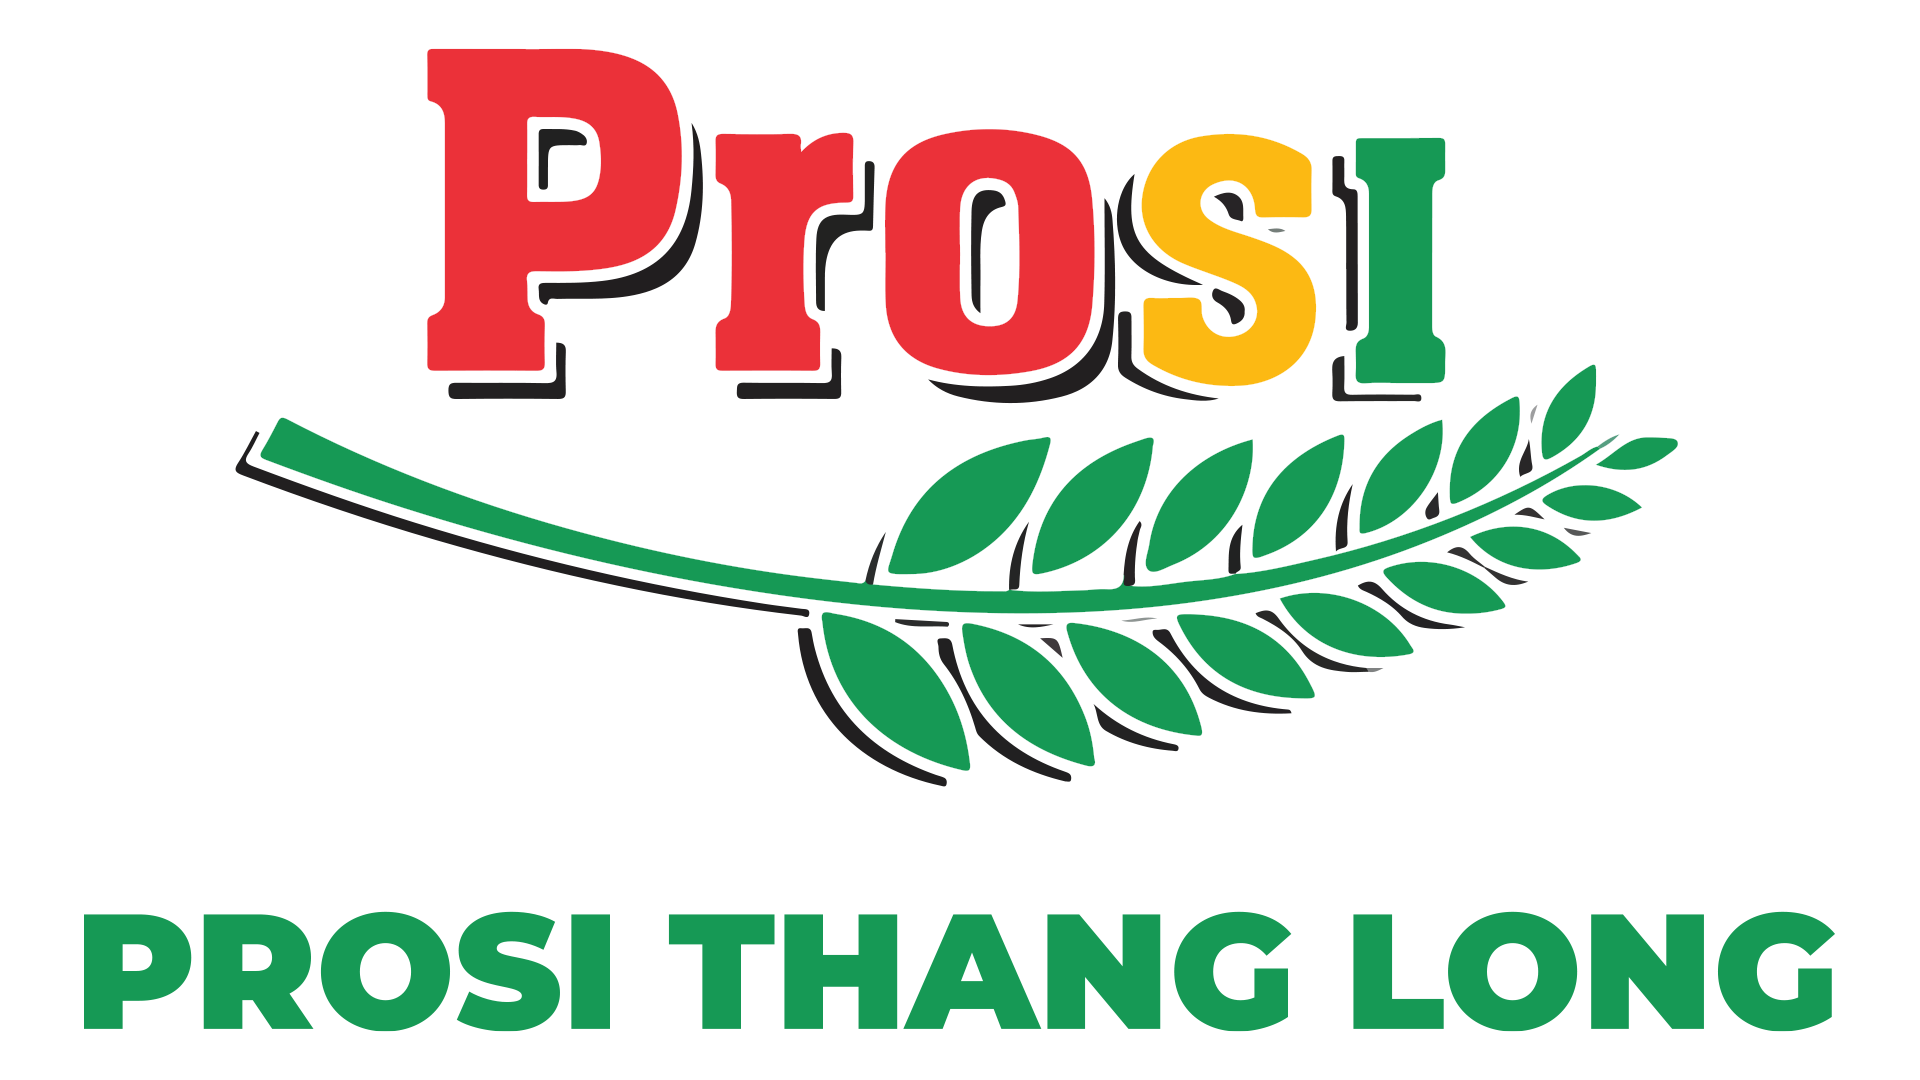 PROSI THANG LONG